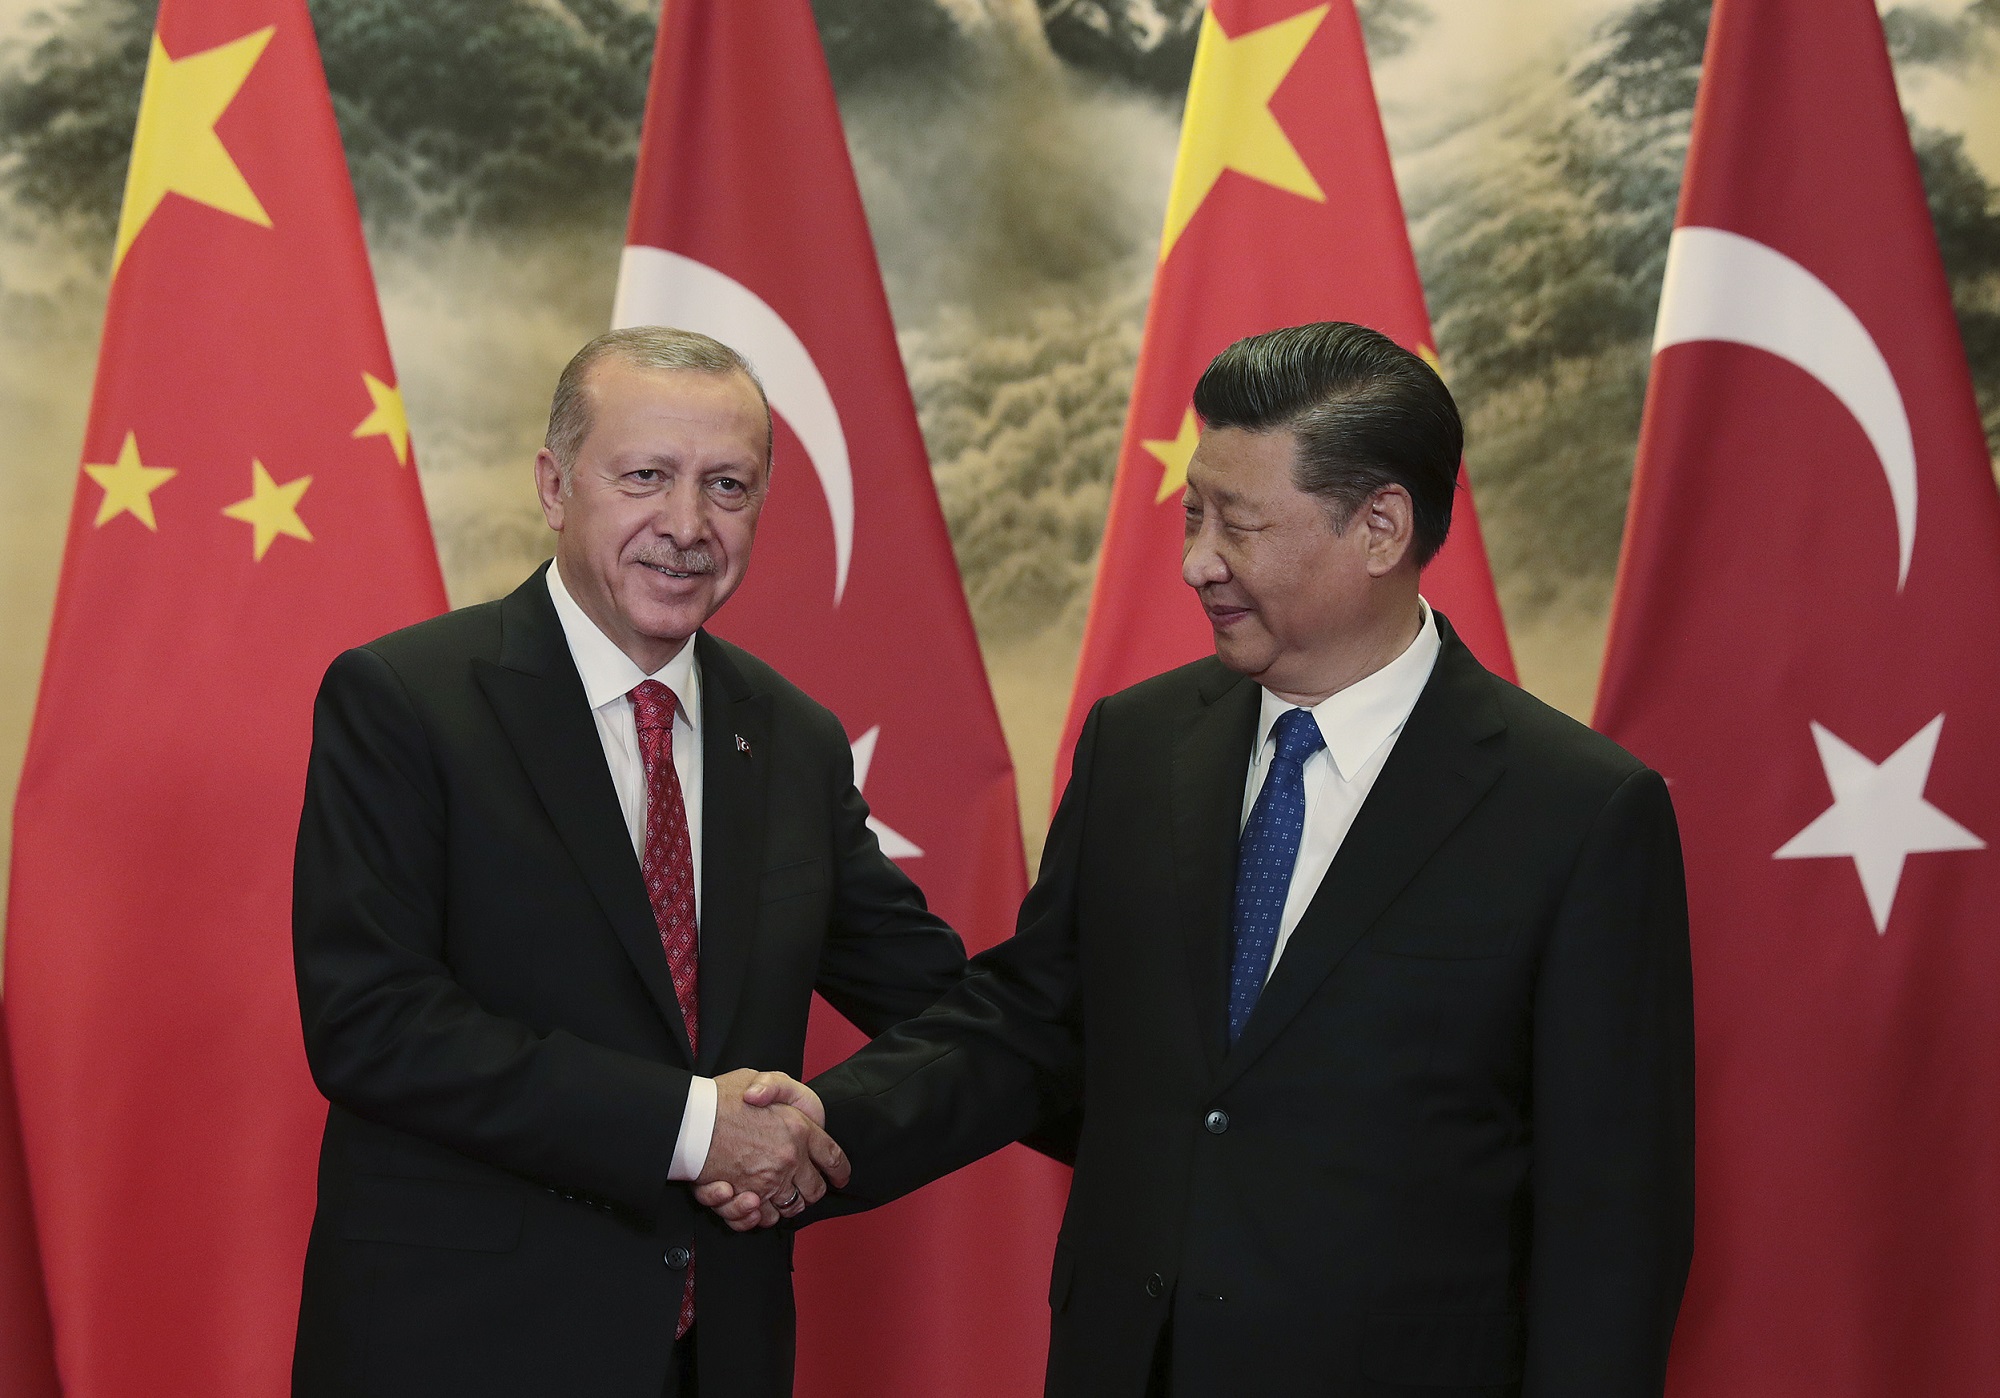 Κίνα-Τουρκία:  Επίκειται συνάντηση  Σι Τζινπίνγκ – Ταγίπ Ερντογάν στην περιφερειακή σύνοδο κορυφής στο Ουζμπεκιστάν